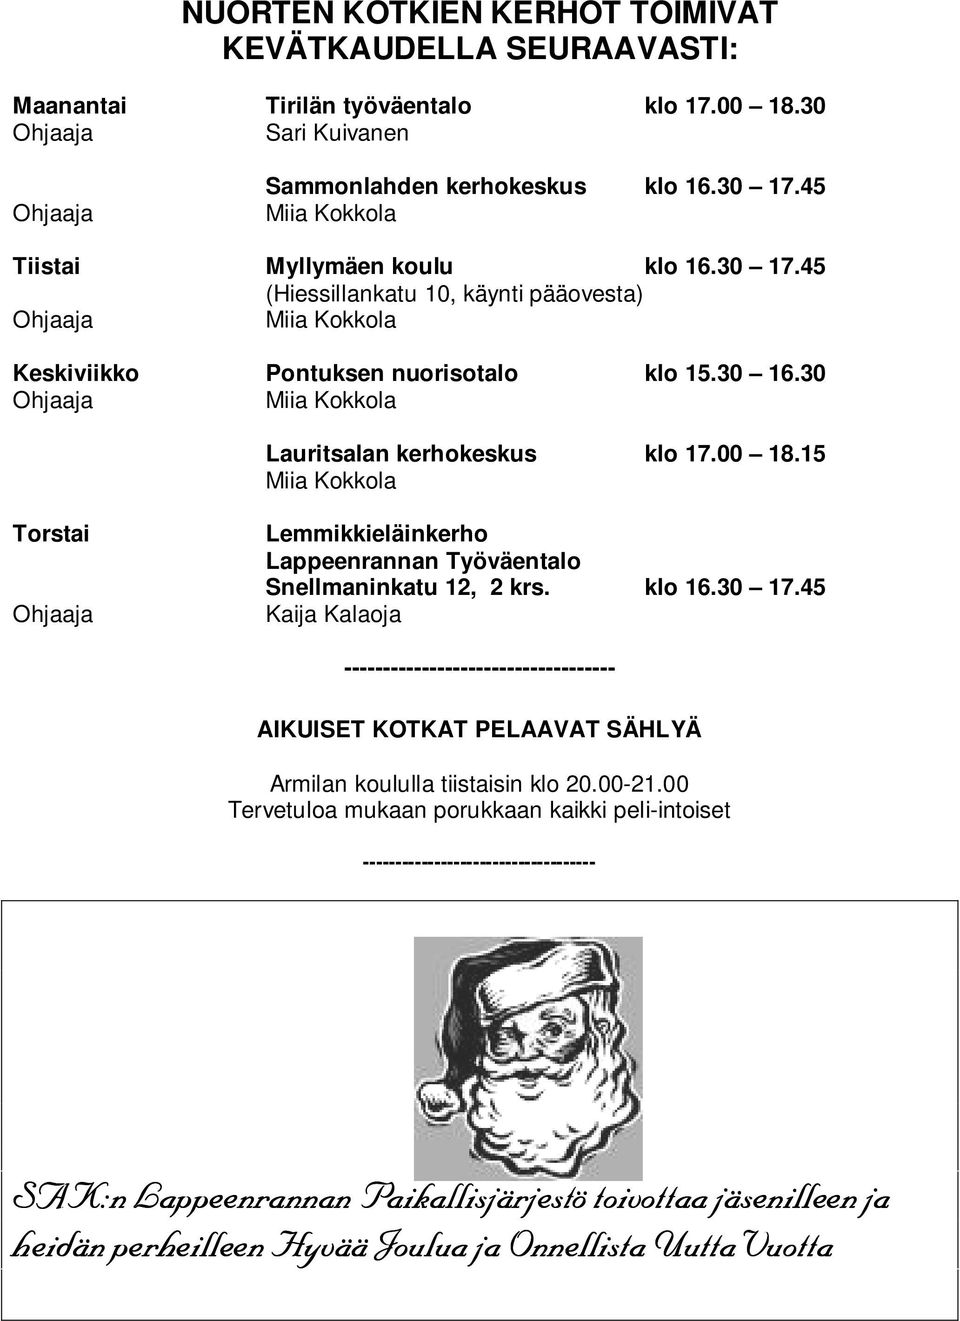 30 Ohjaaja Miia Kokkola Lauritsalan kerhokeskus klo 17.00 18.15 Miia Kokkola Torstai Ohjaaja Lemmikkieläinkerho Lappeenrannan Työväentalo Snellmaninkatu 12, 2 krs. klo 16.30 17.